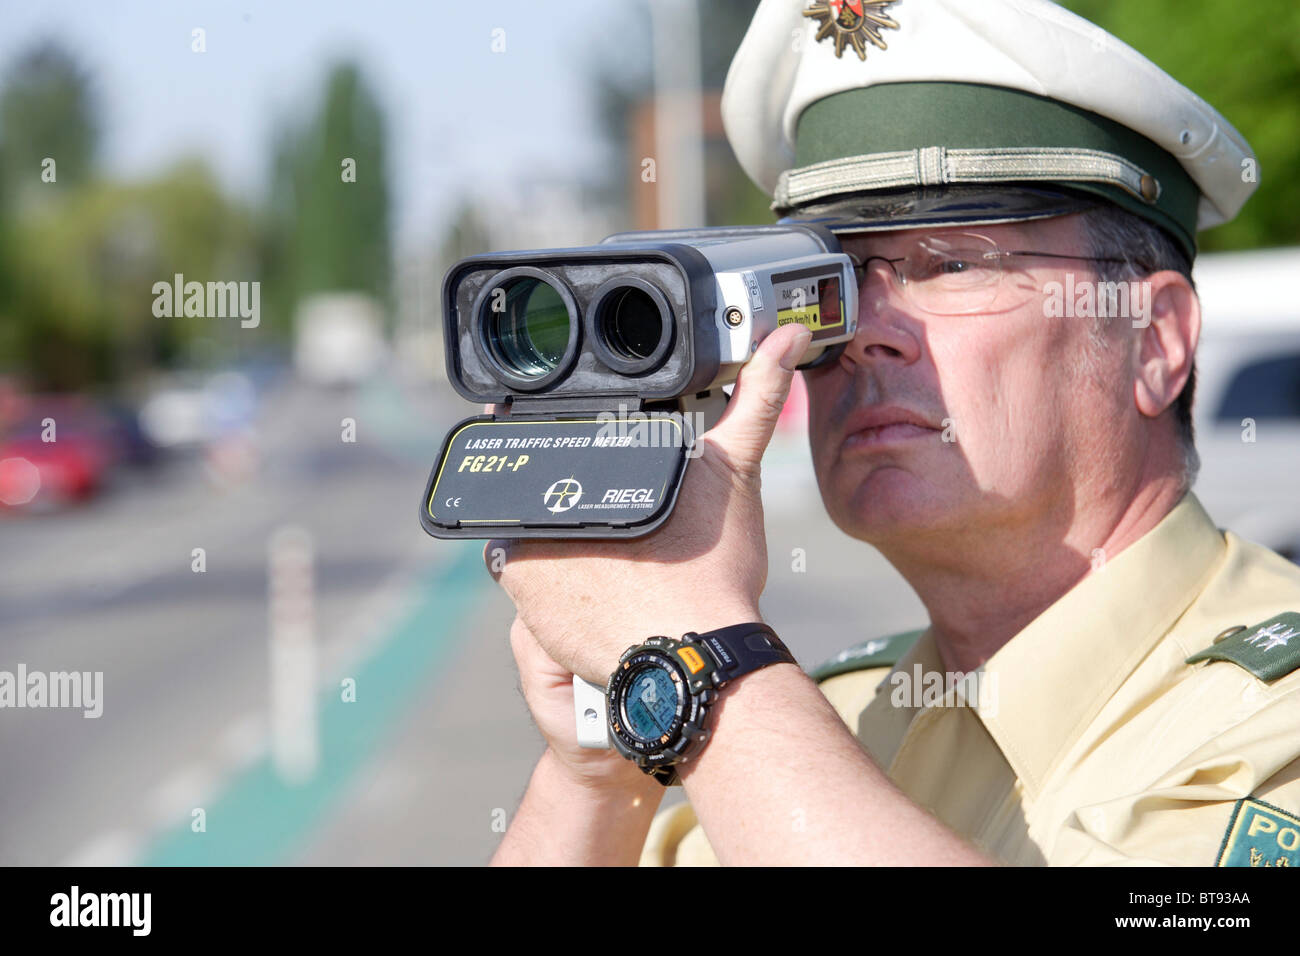 Un policier faisant la surveillance de vitesse avec un pistolet laser, Koblenz, Rhénanie-Palatinat, Allemagne, Europe Banque D'Images